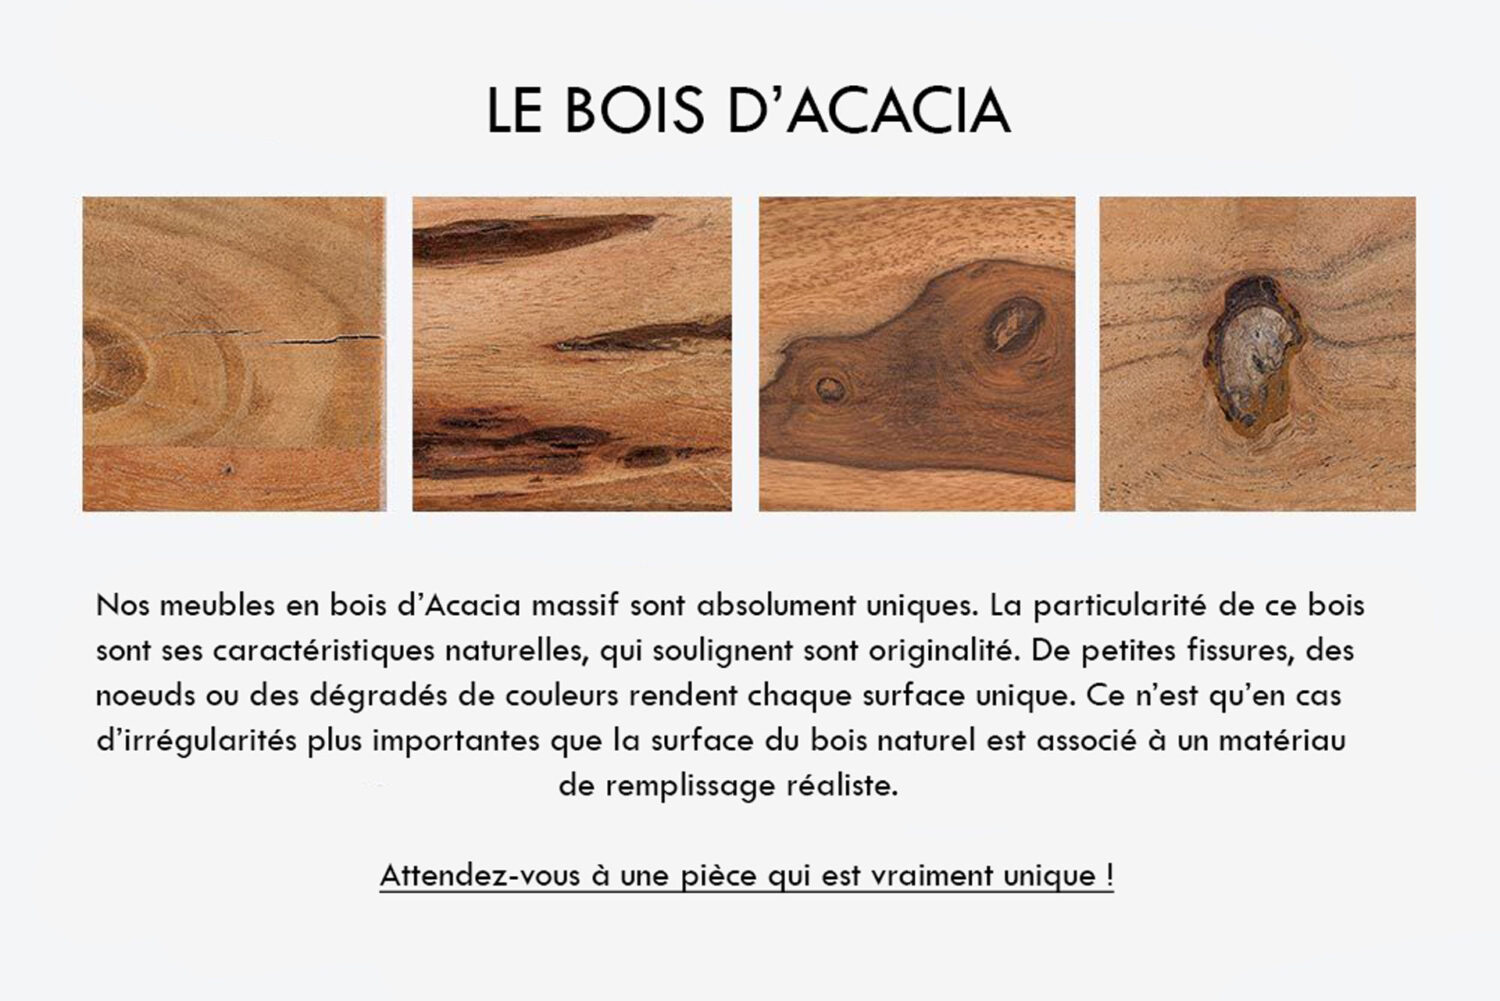 Meubles en bois d'Acacia